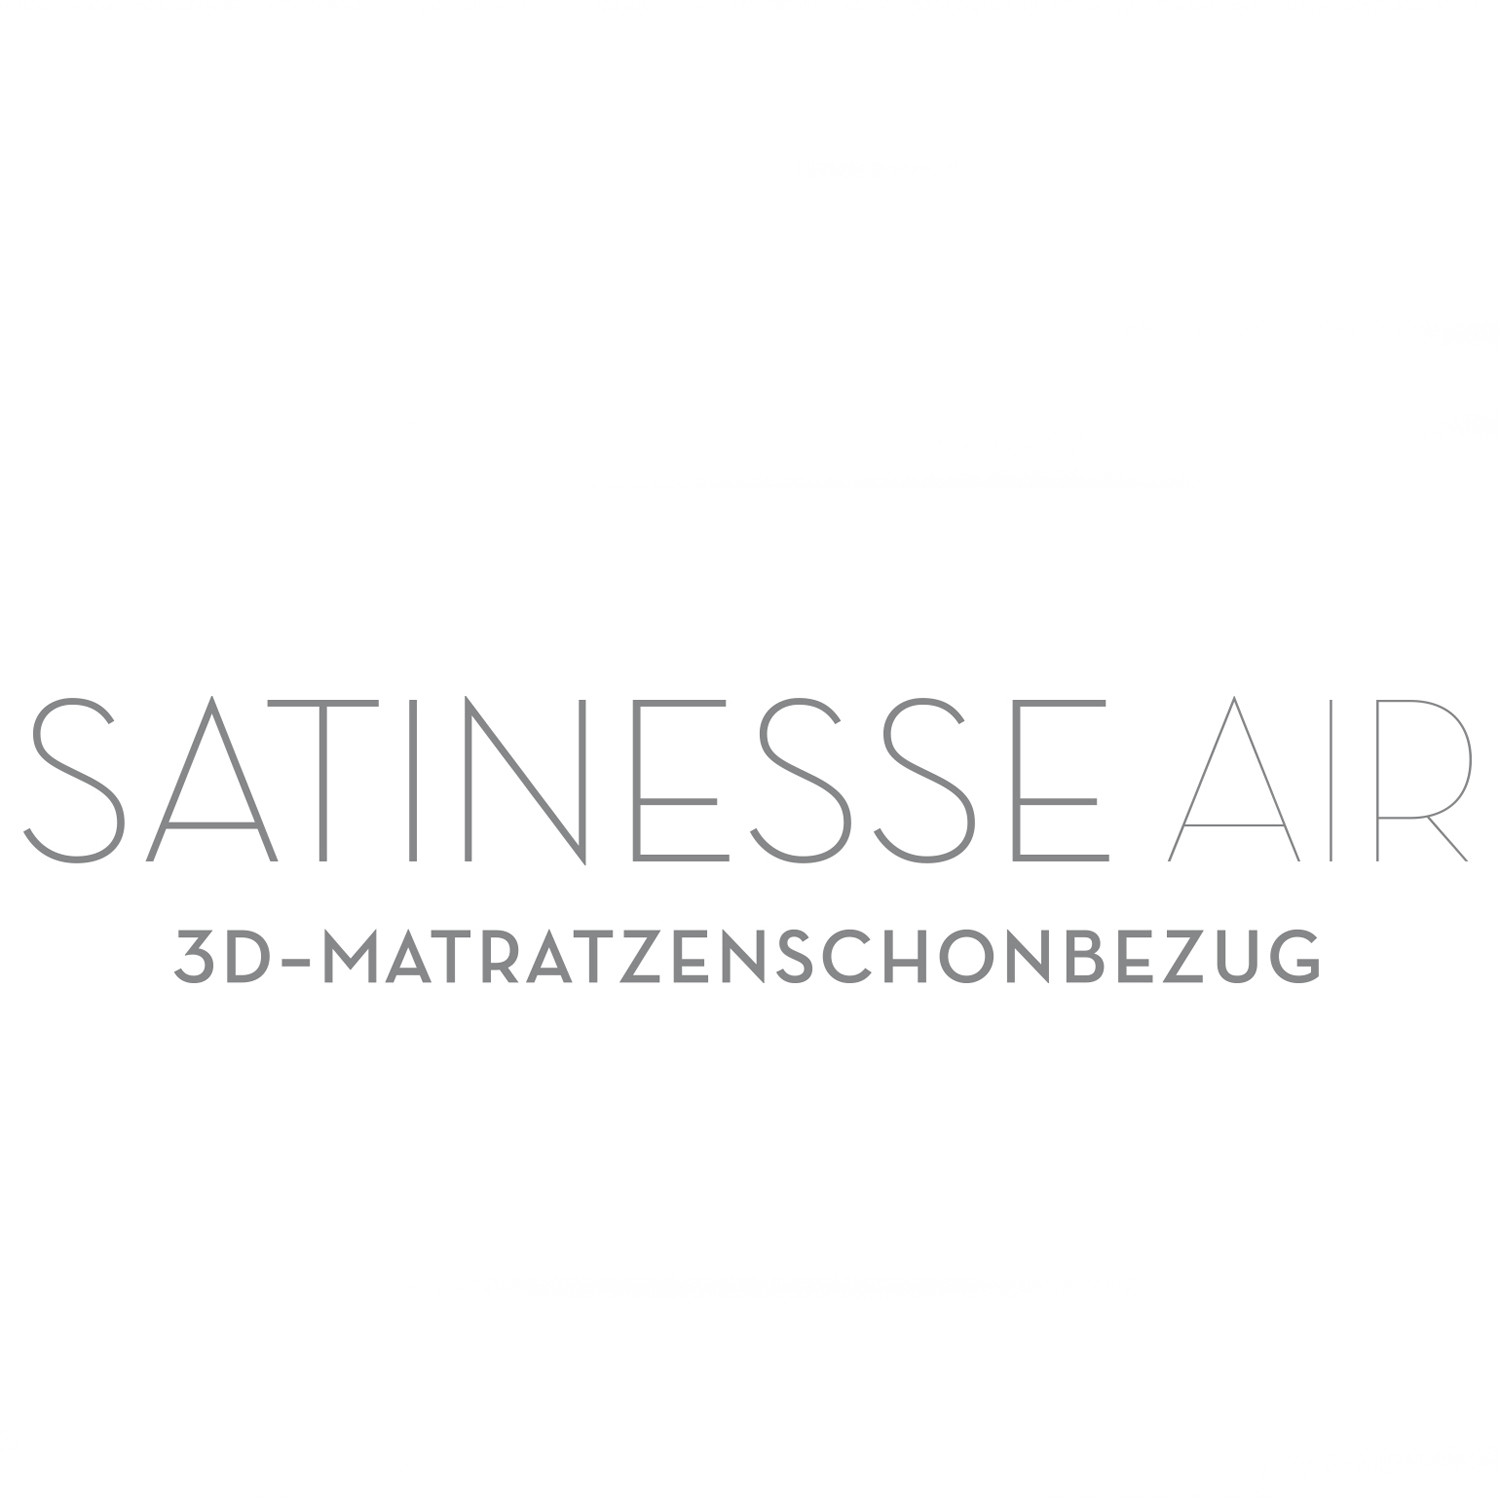 FORMESSE Matratzenschoner Satinesse Air Silver wollweiß 180x220cm